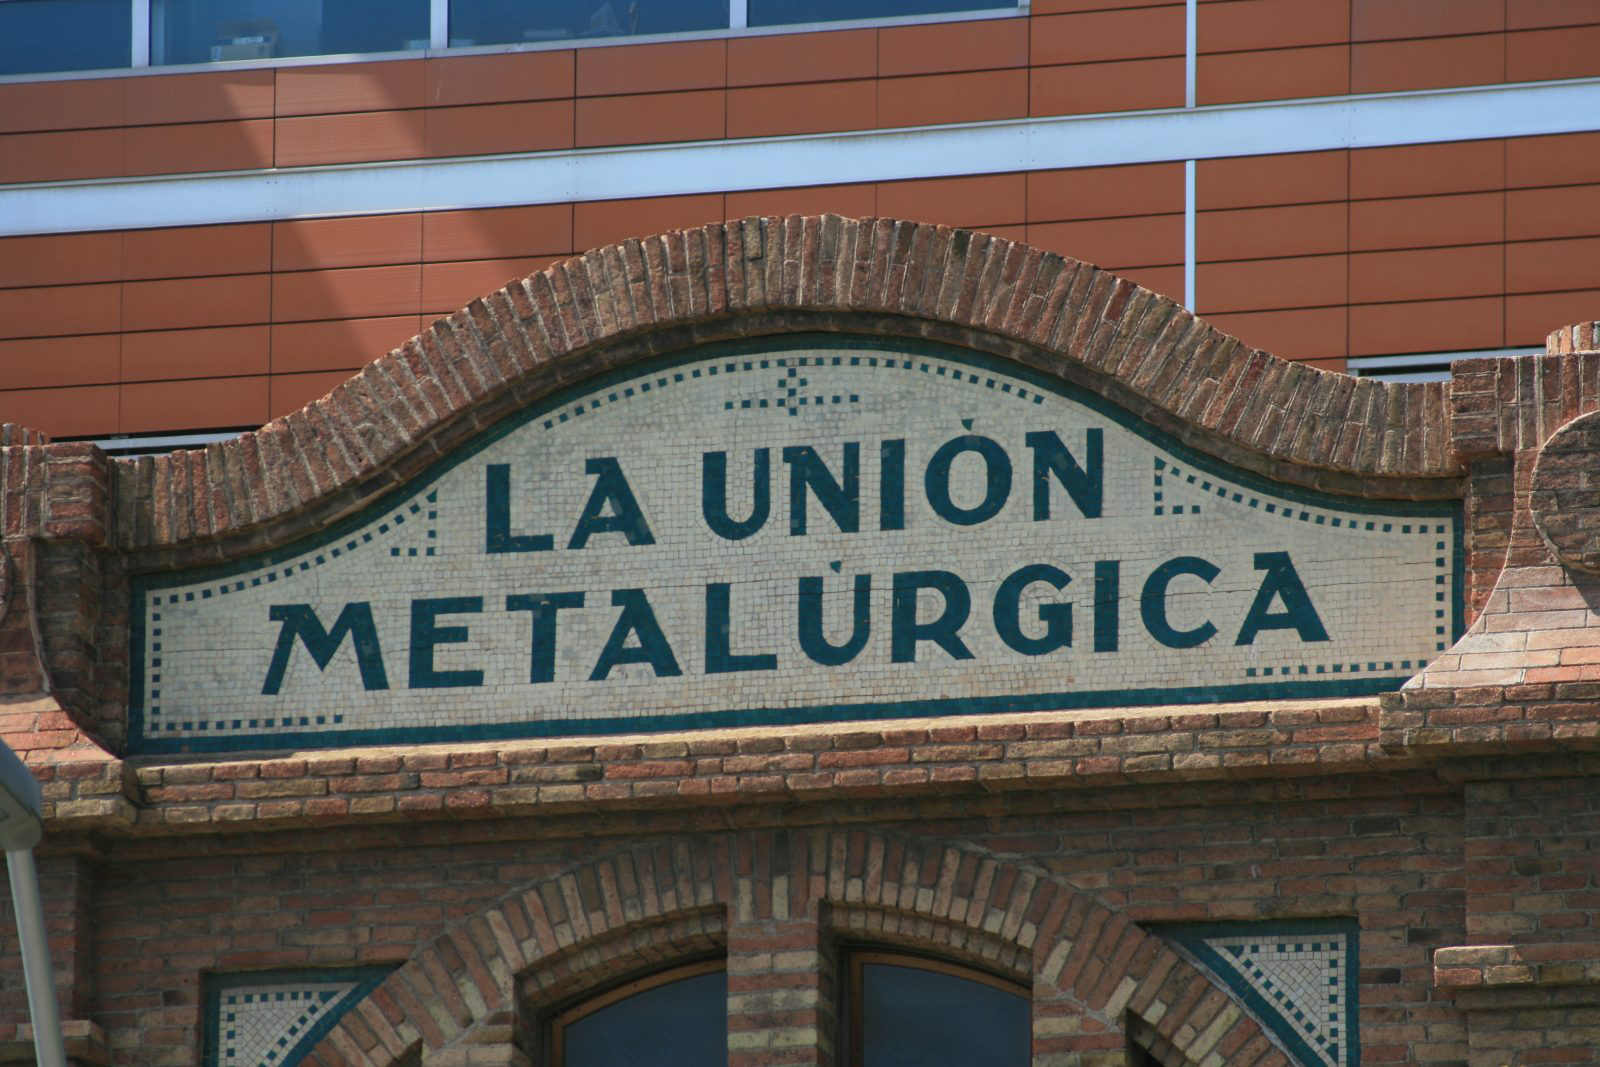 Mosaic de tessel·les de l’antiga Fàbrica La Unión Metalúrgica (Almogàvers, 119-123)